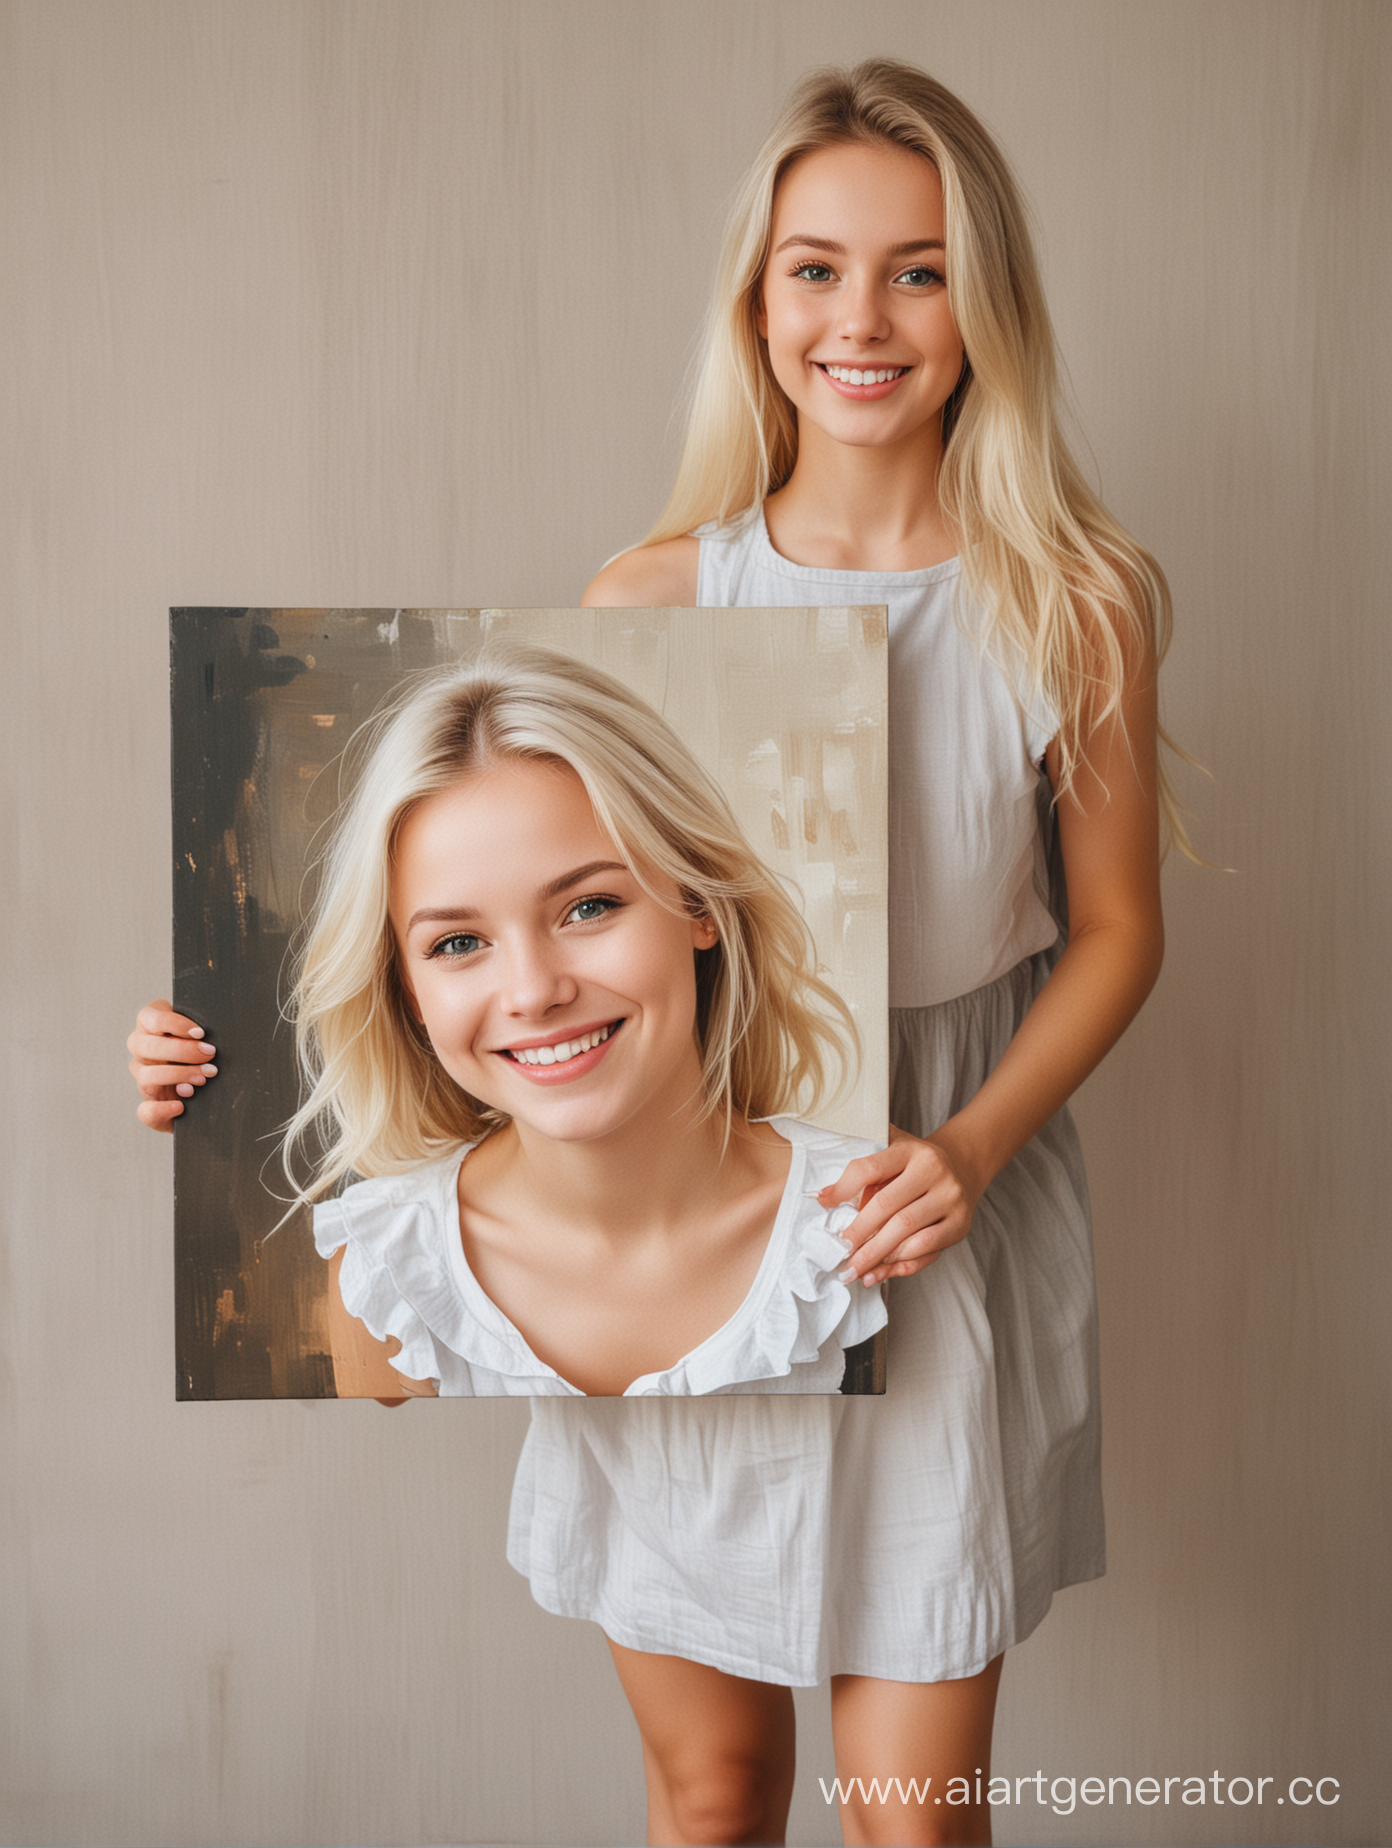 Счастливая, красивая девушка, блондинка, держит перед собой в руках портрет на холсте. В полный рост. 